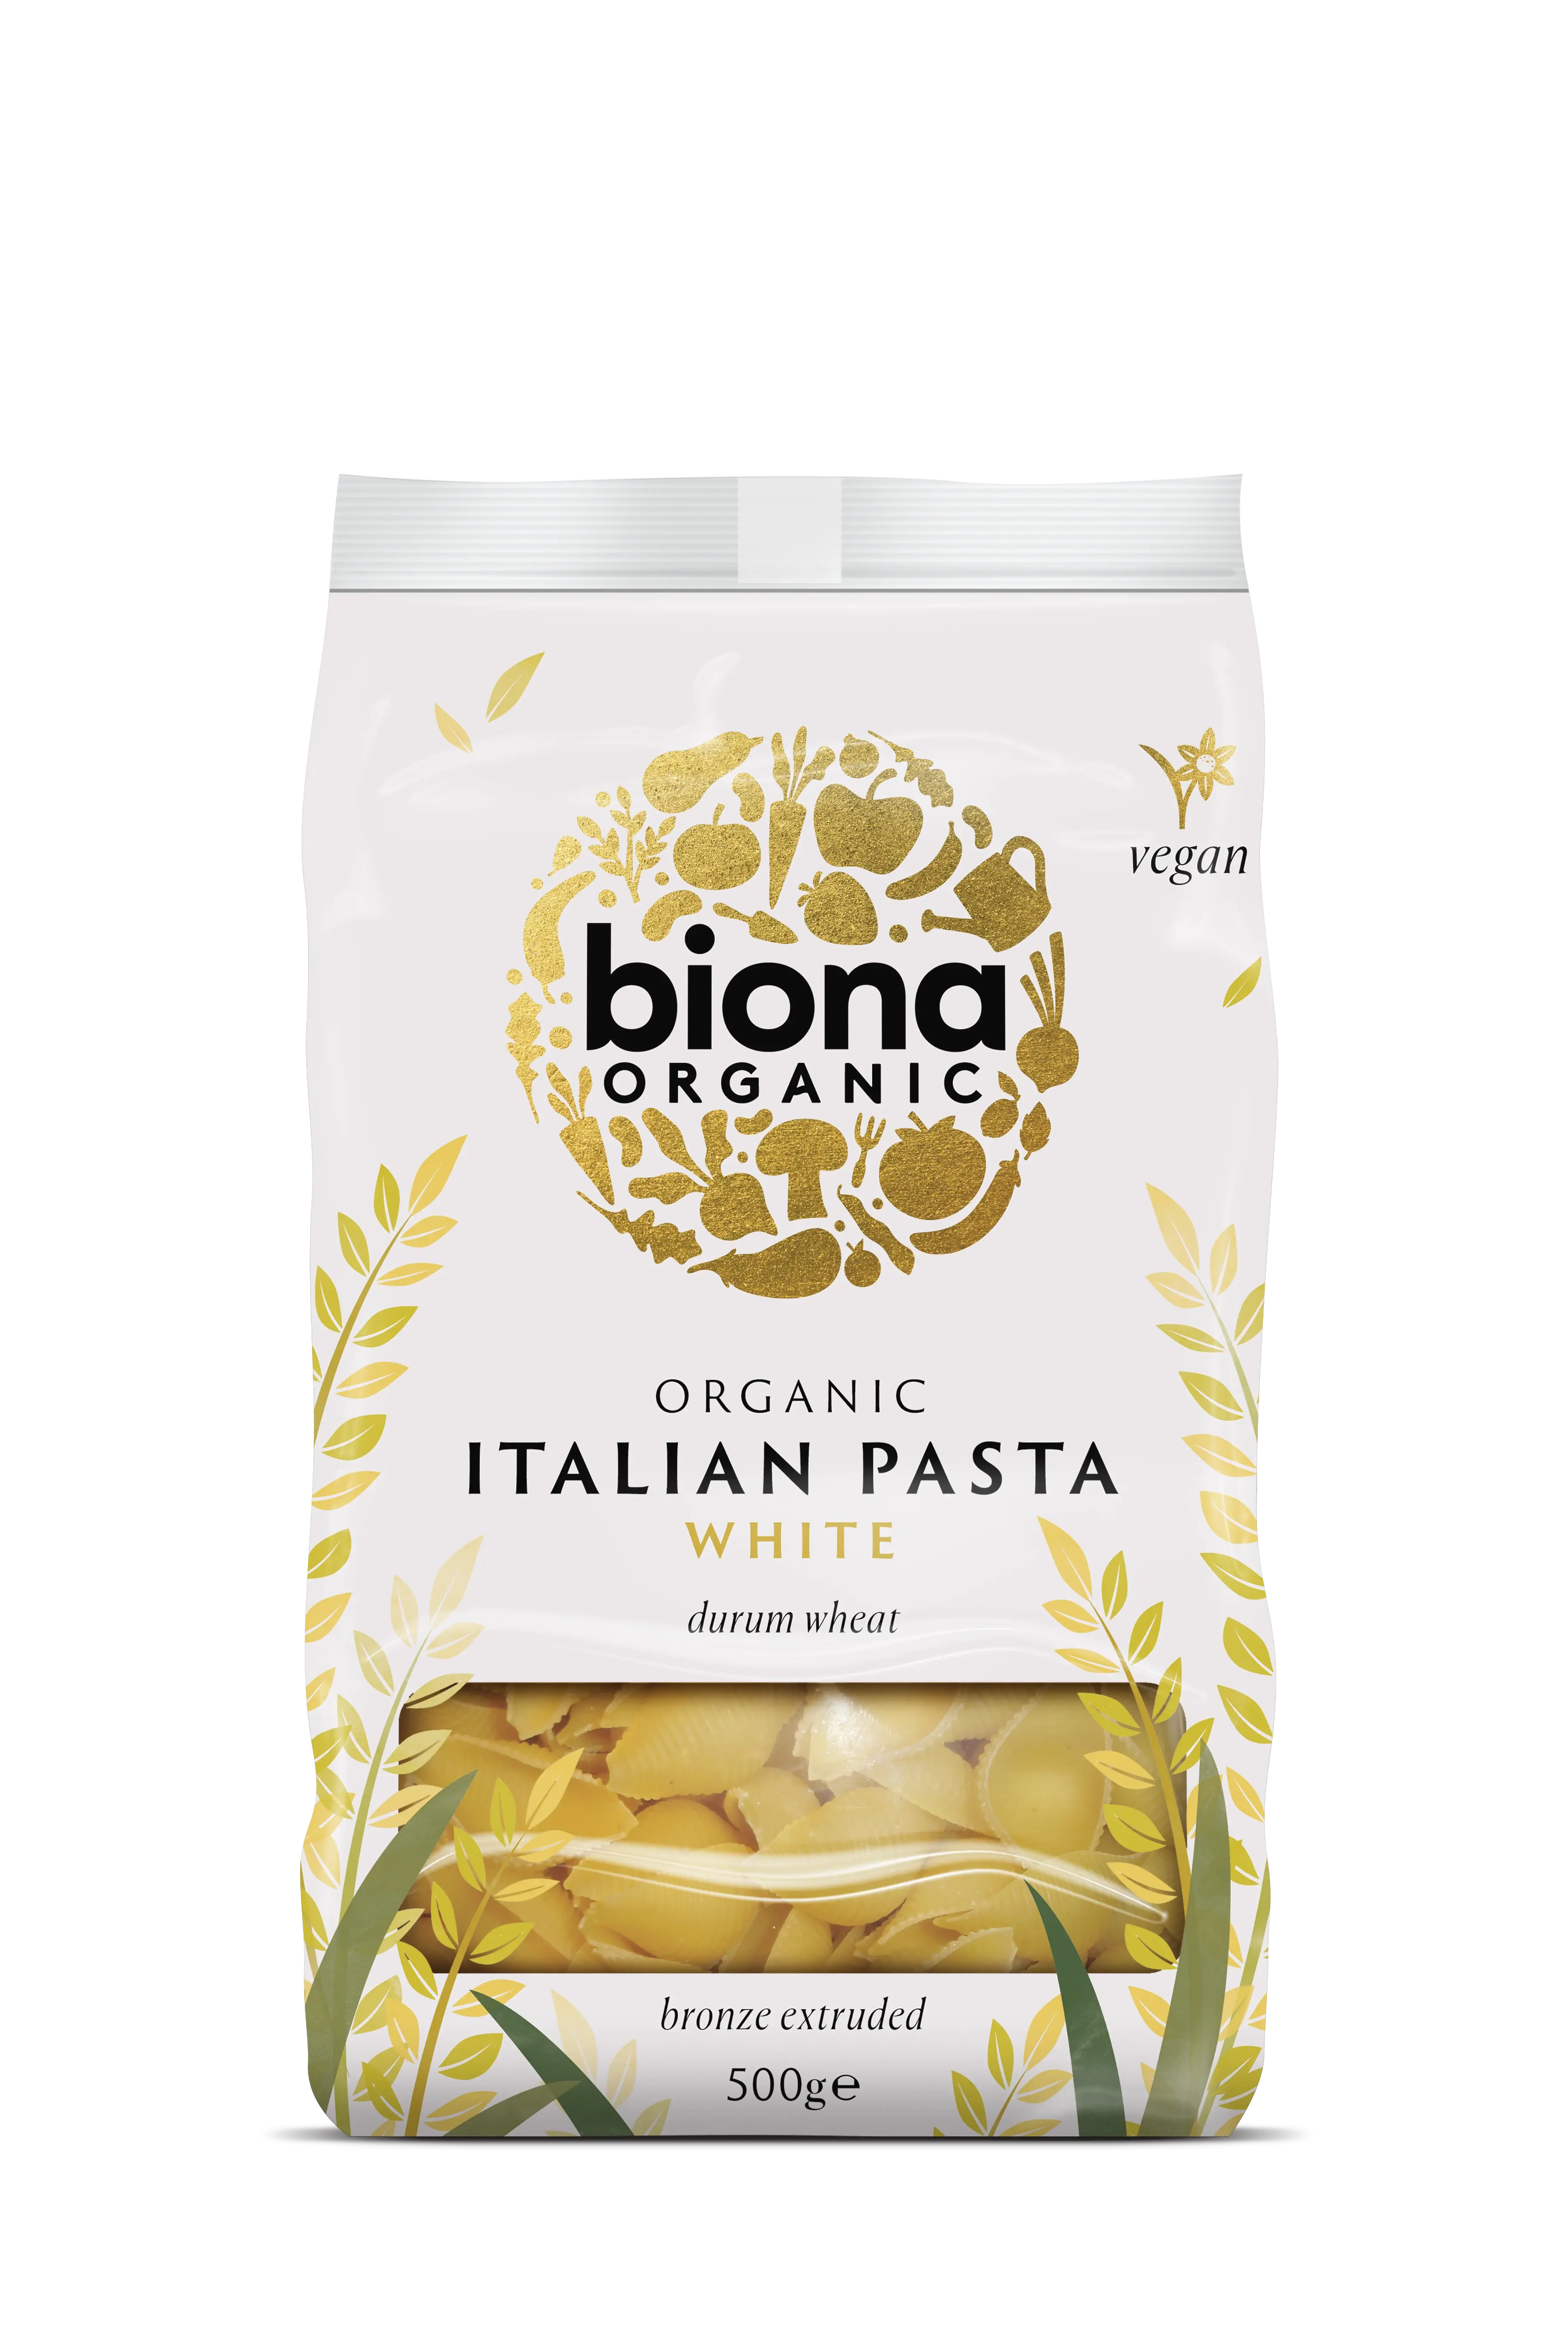 Biona White Conchiglie (shells) Organic 500g